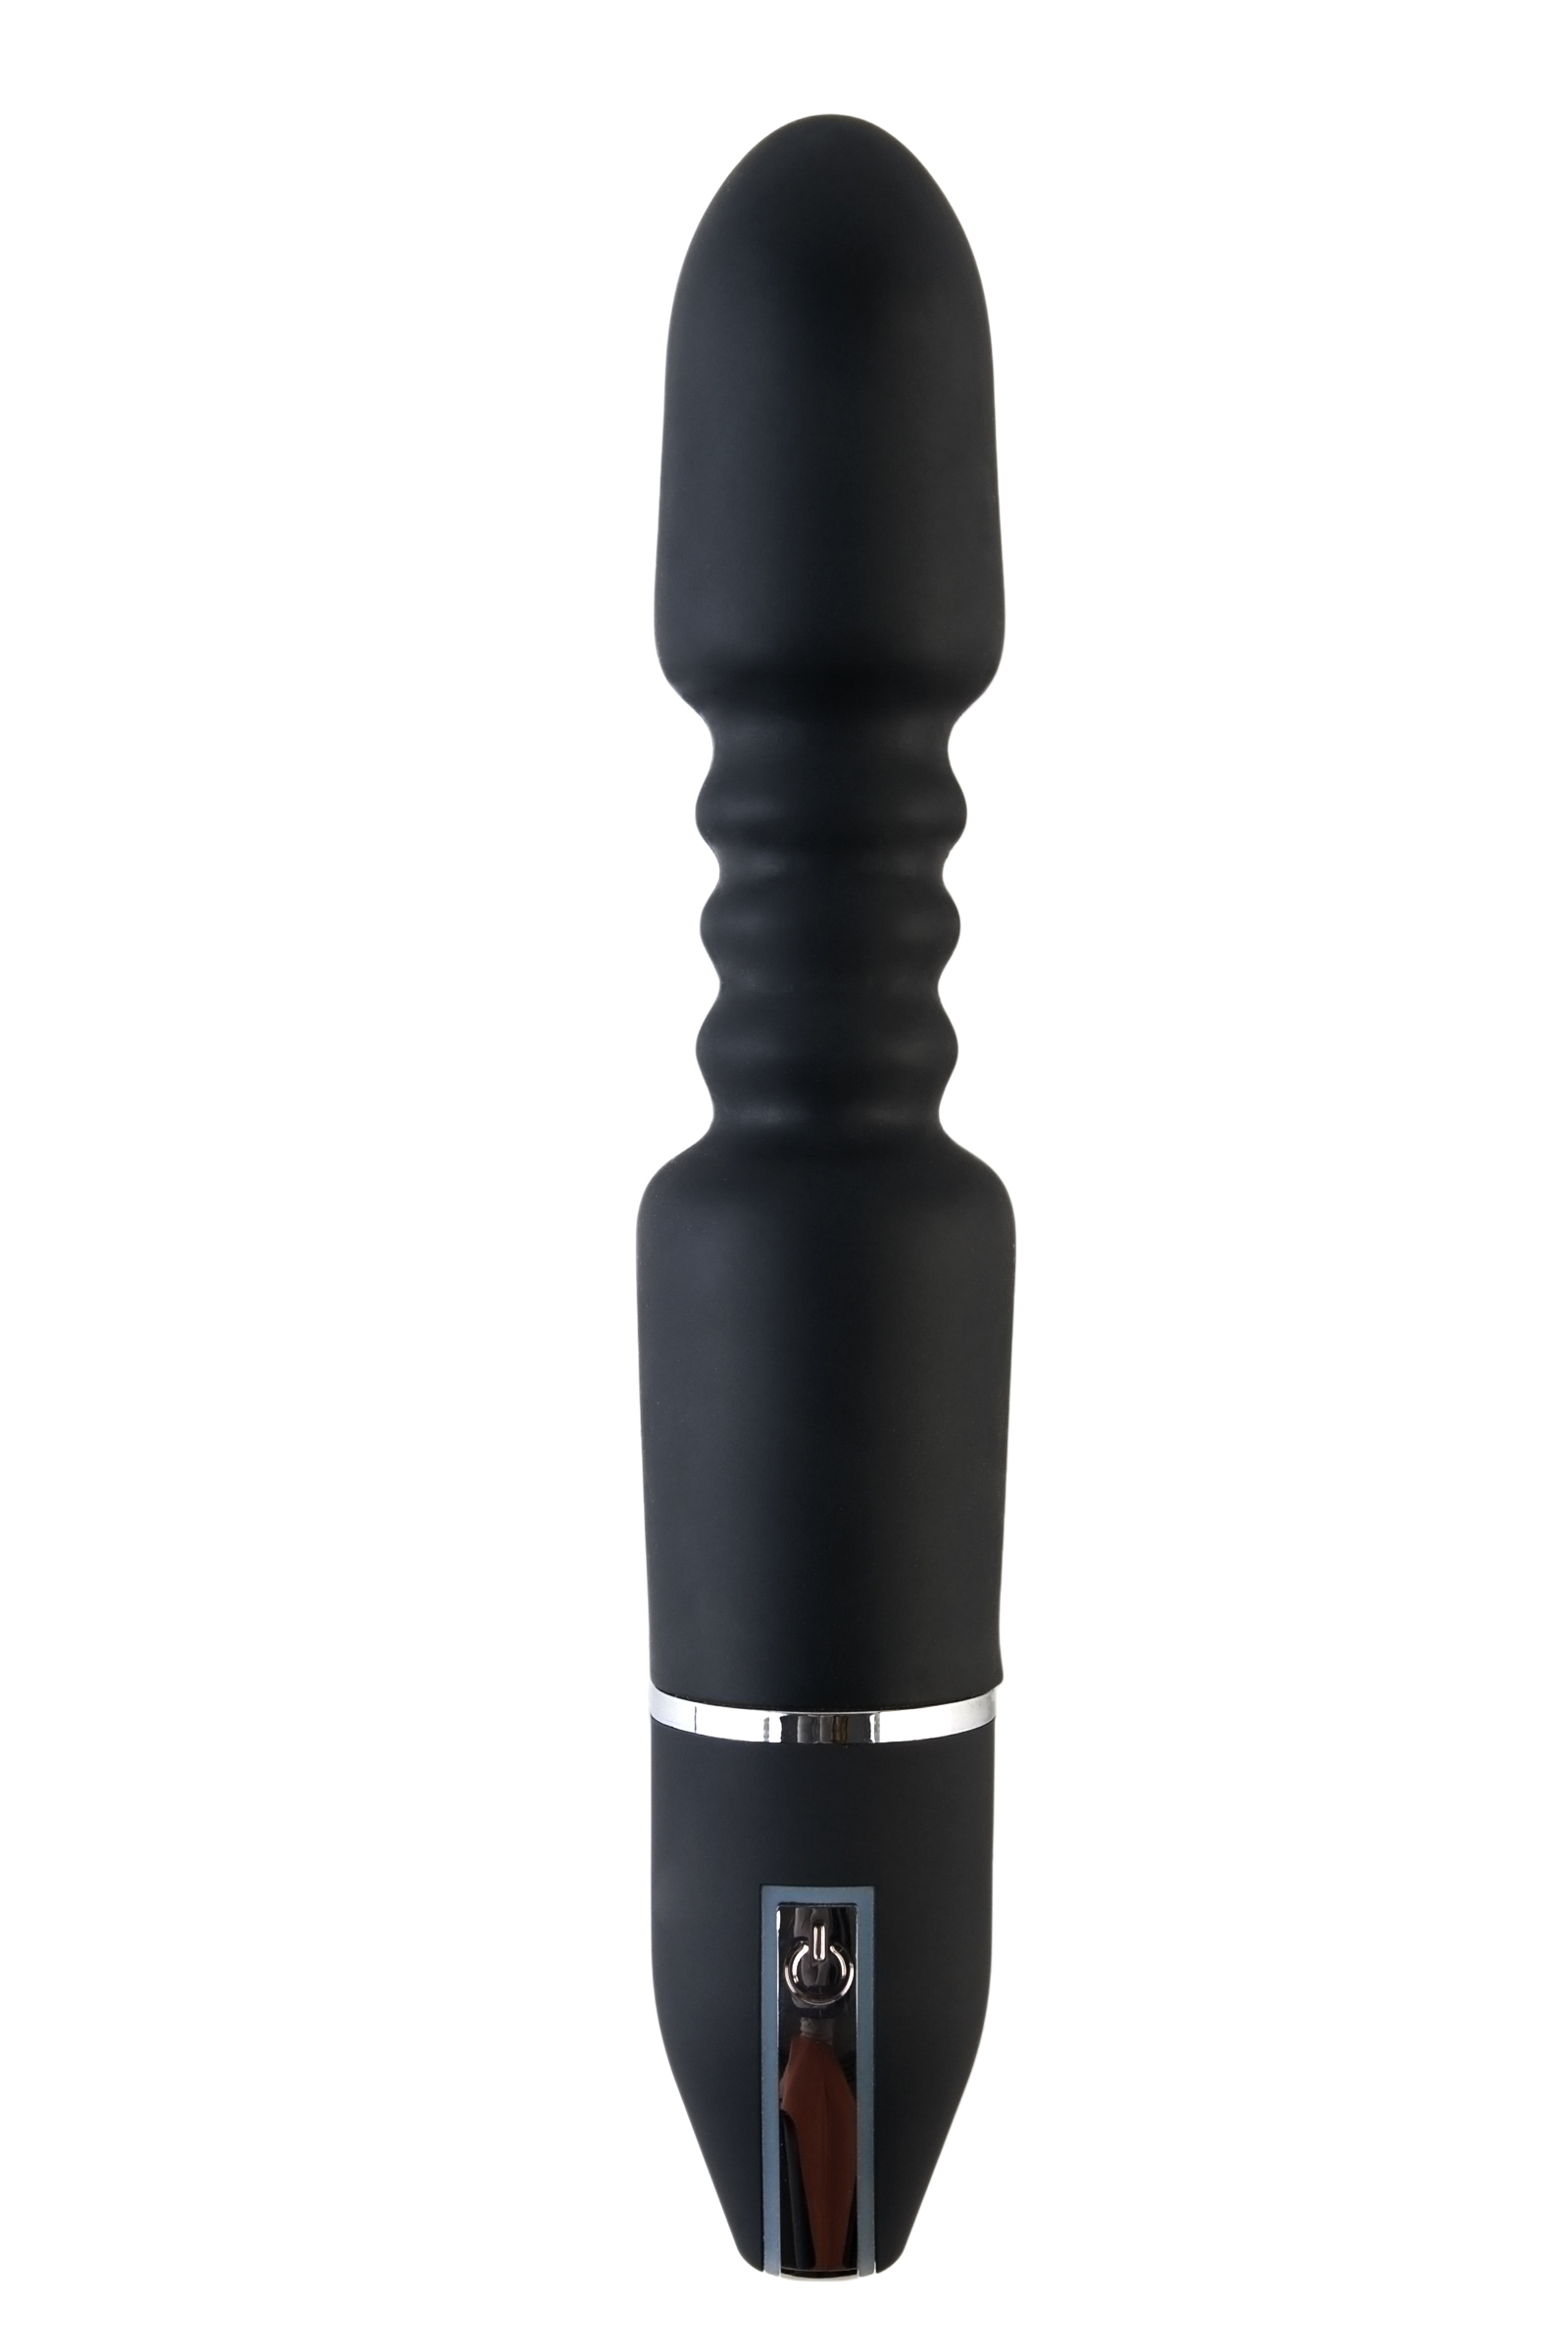 Анальный стимулятор Black & Red by TOYFA, 10 режимов вибрации, водонепроницаемый, силикон, чёрный, 28 см, Ø 5,4 см. Фото N2